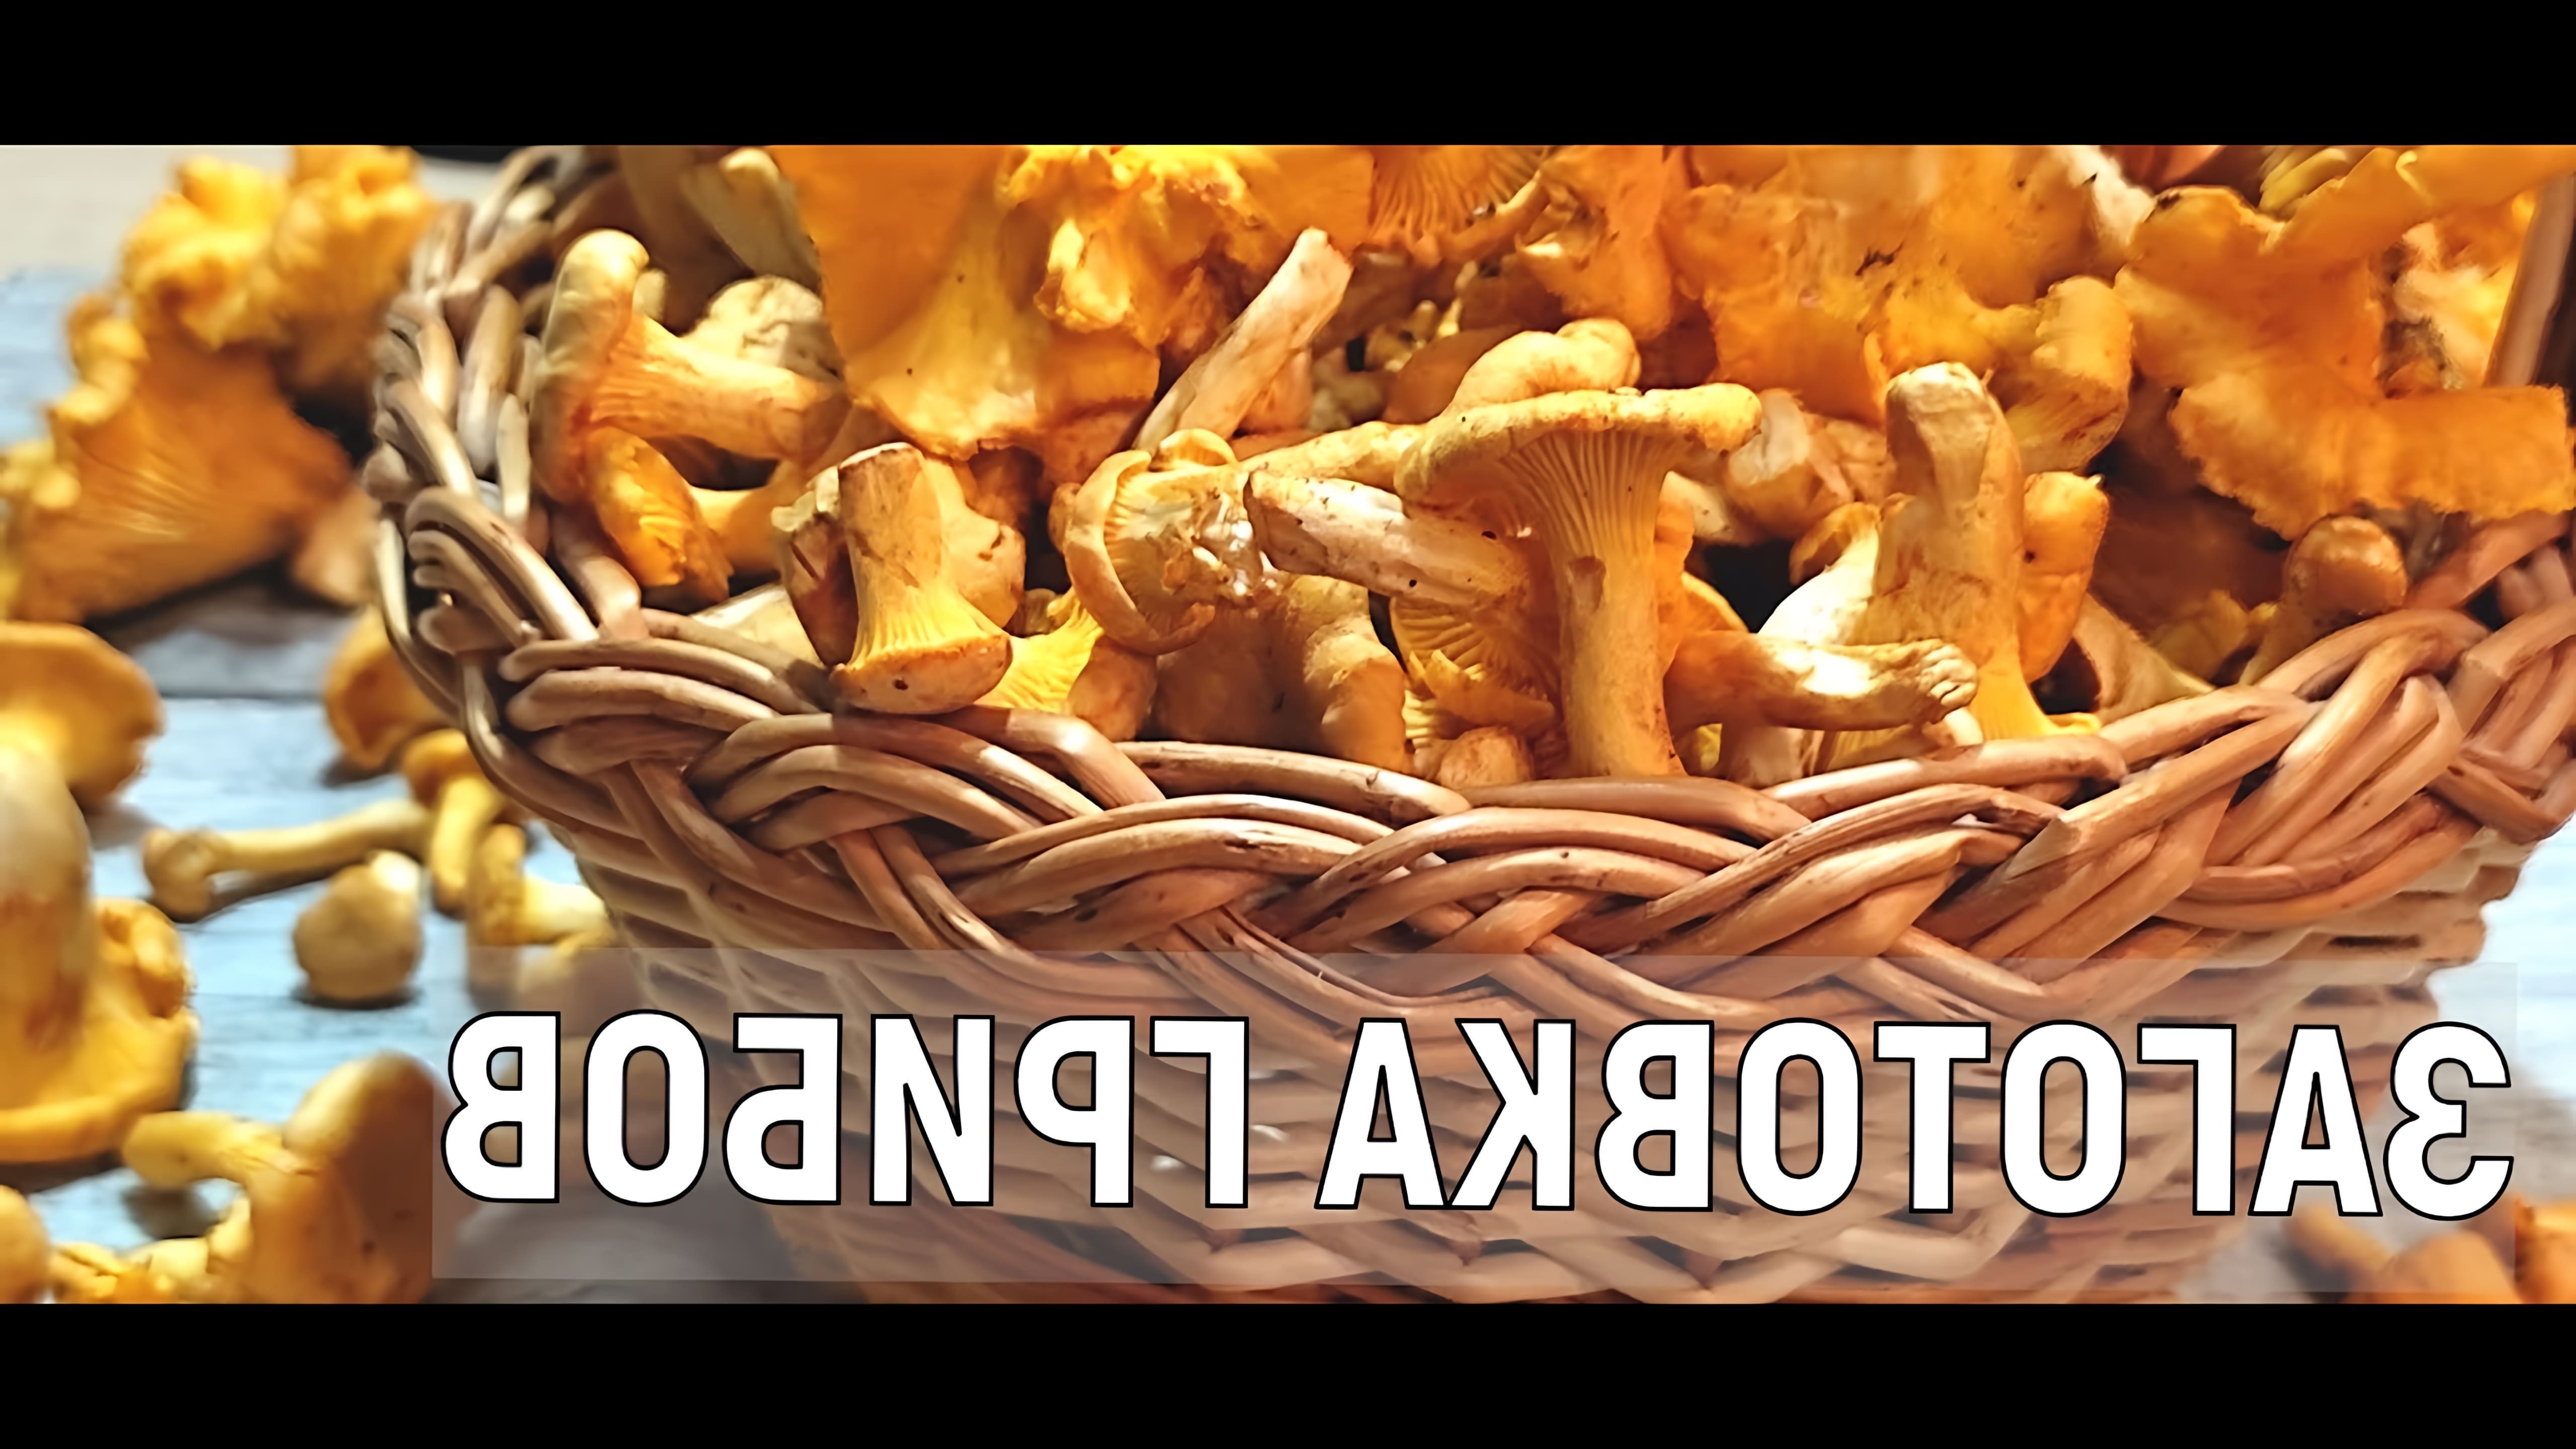 В данном видео рассказывается о рецептах засолки и маринования грибов на зиму